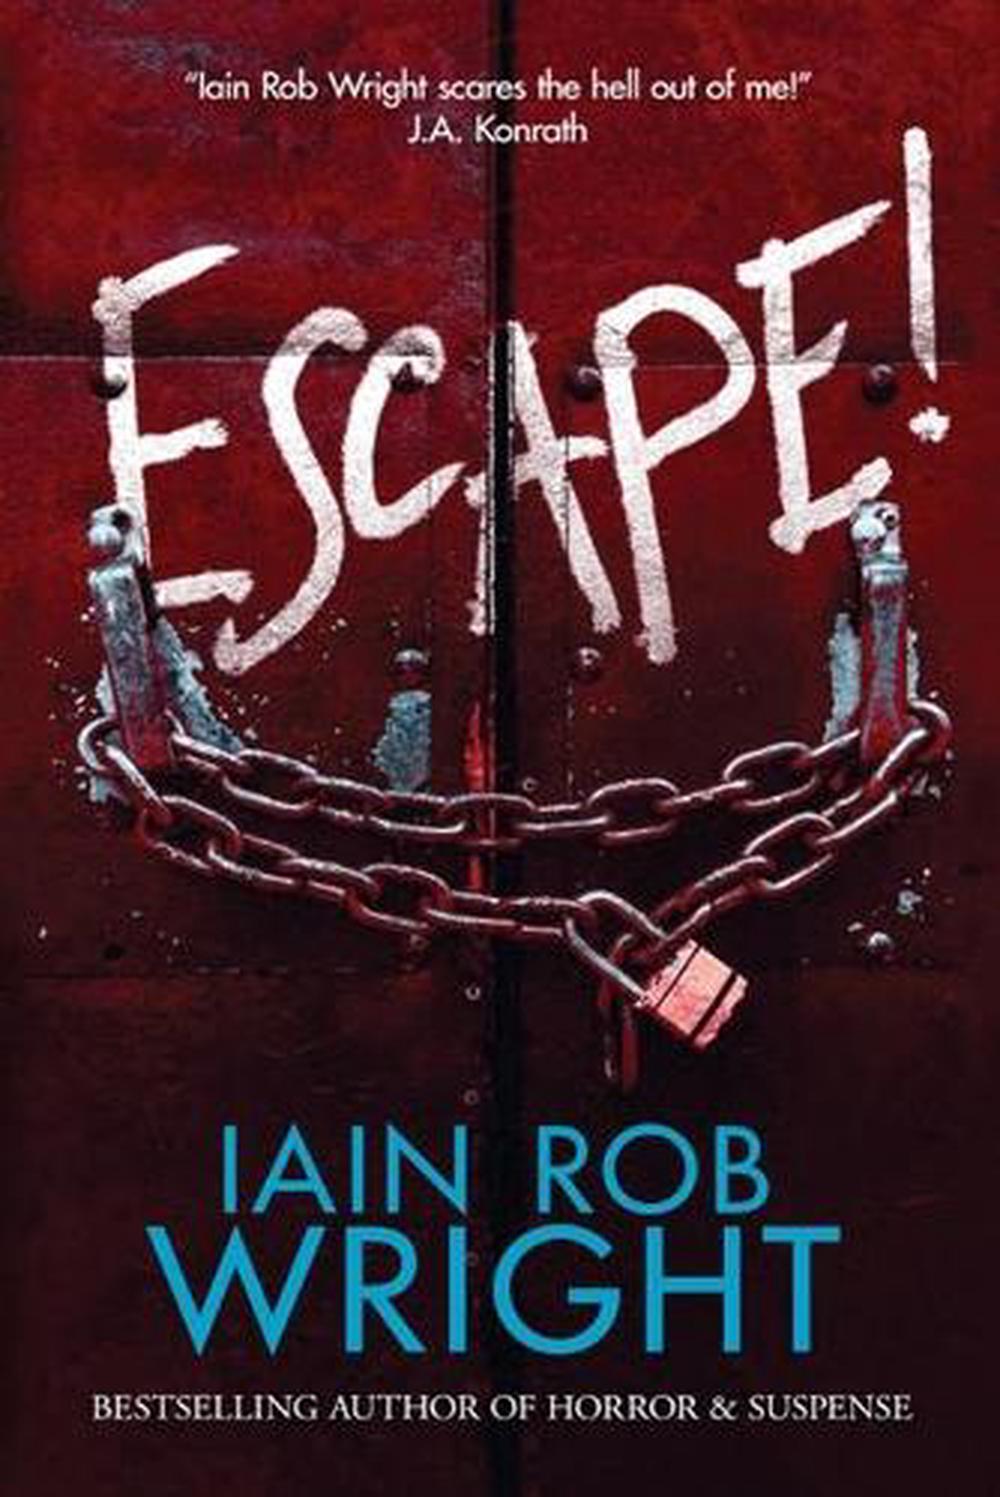 escape from reason book